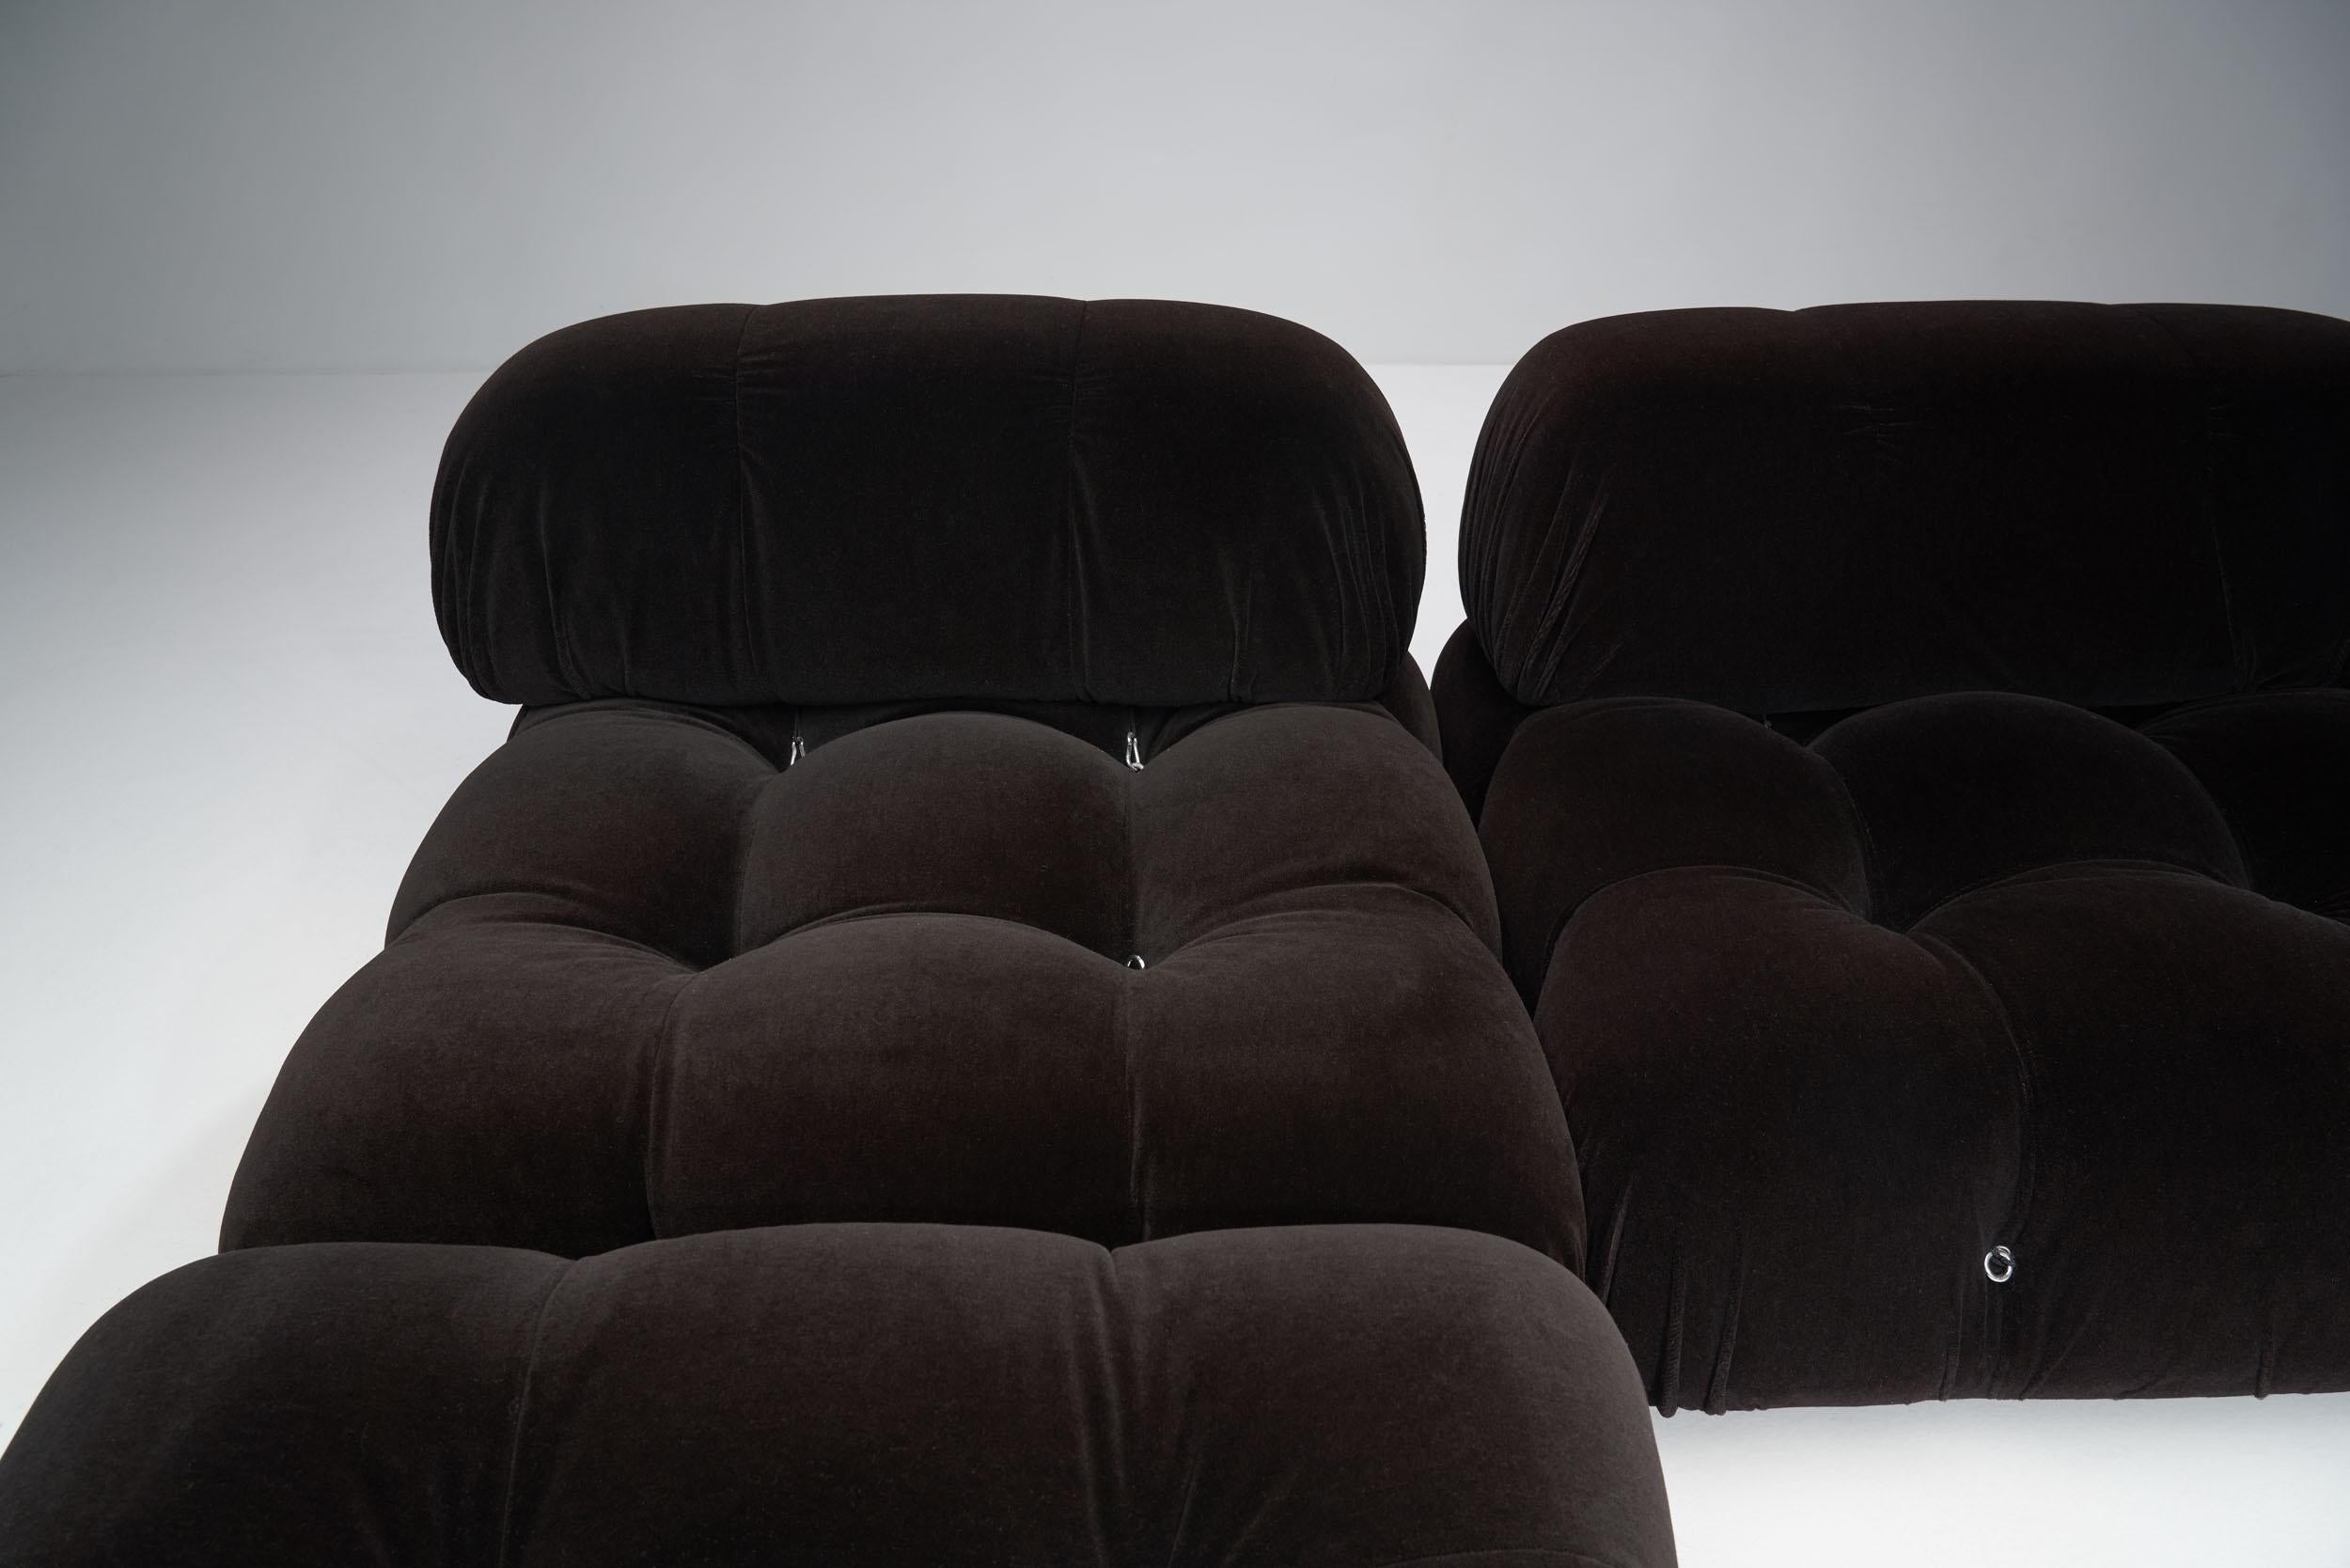 Dark “Camaleonda” Modular Sofa in 4 Segments by Mario Bellini for B&B, Italy 197 2